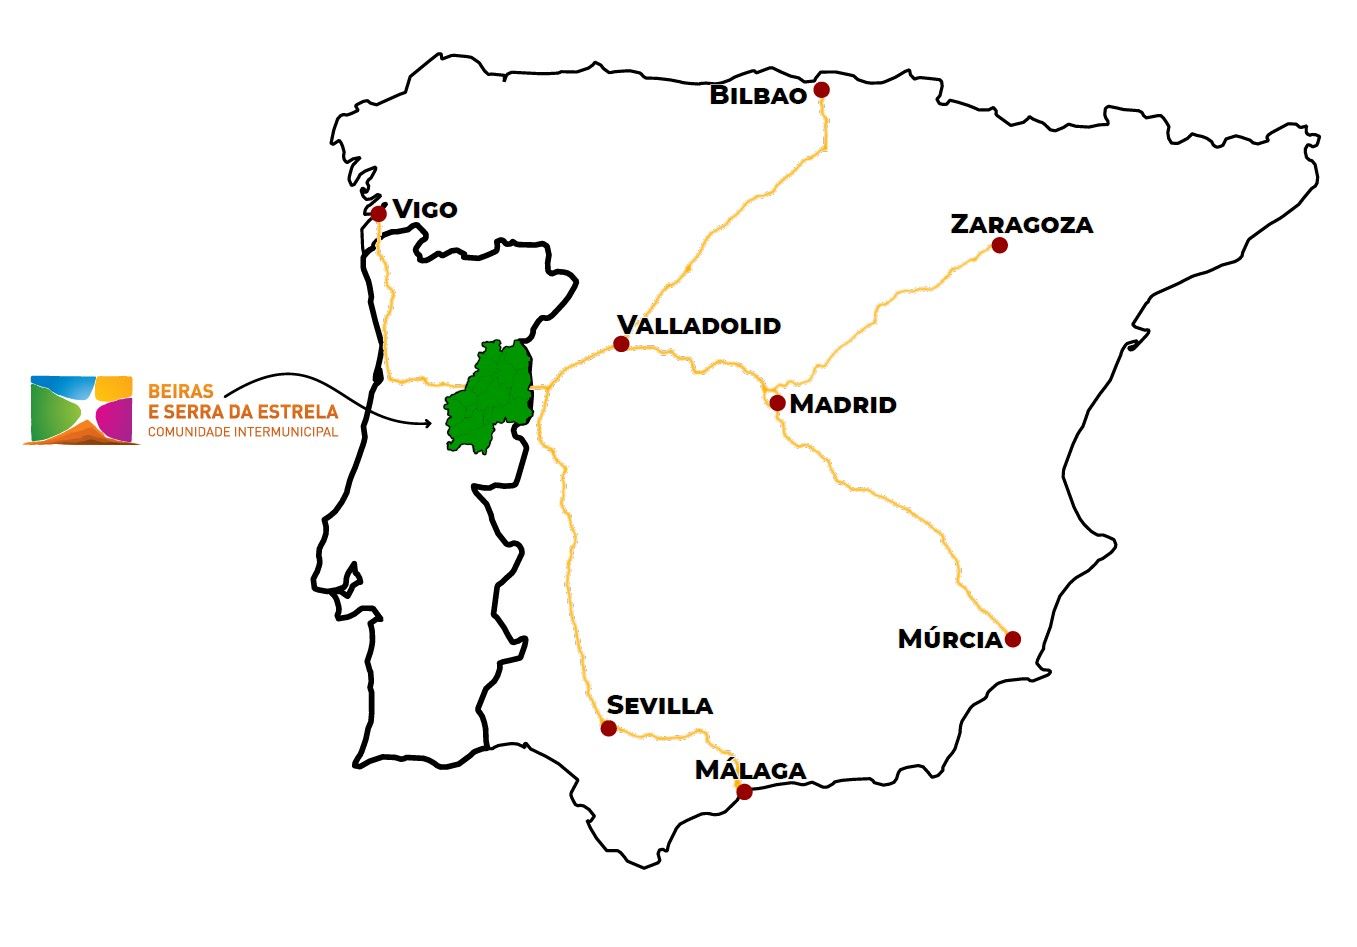 Comunidade Intermunicipal das Beiras e Serra da Estrela